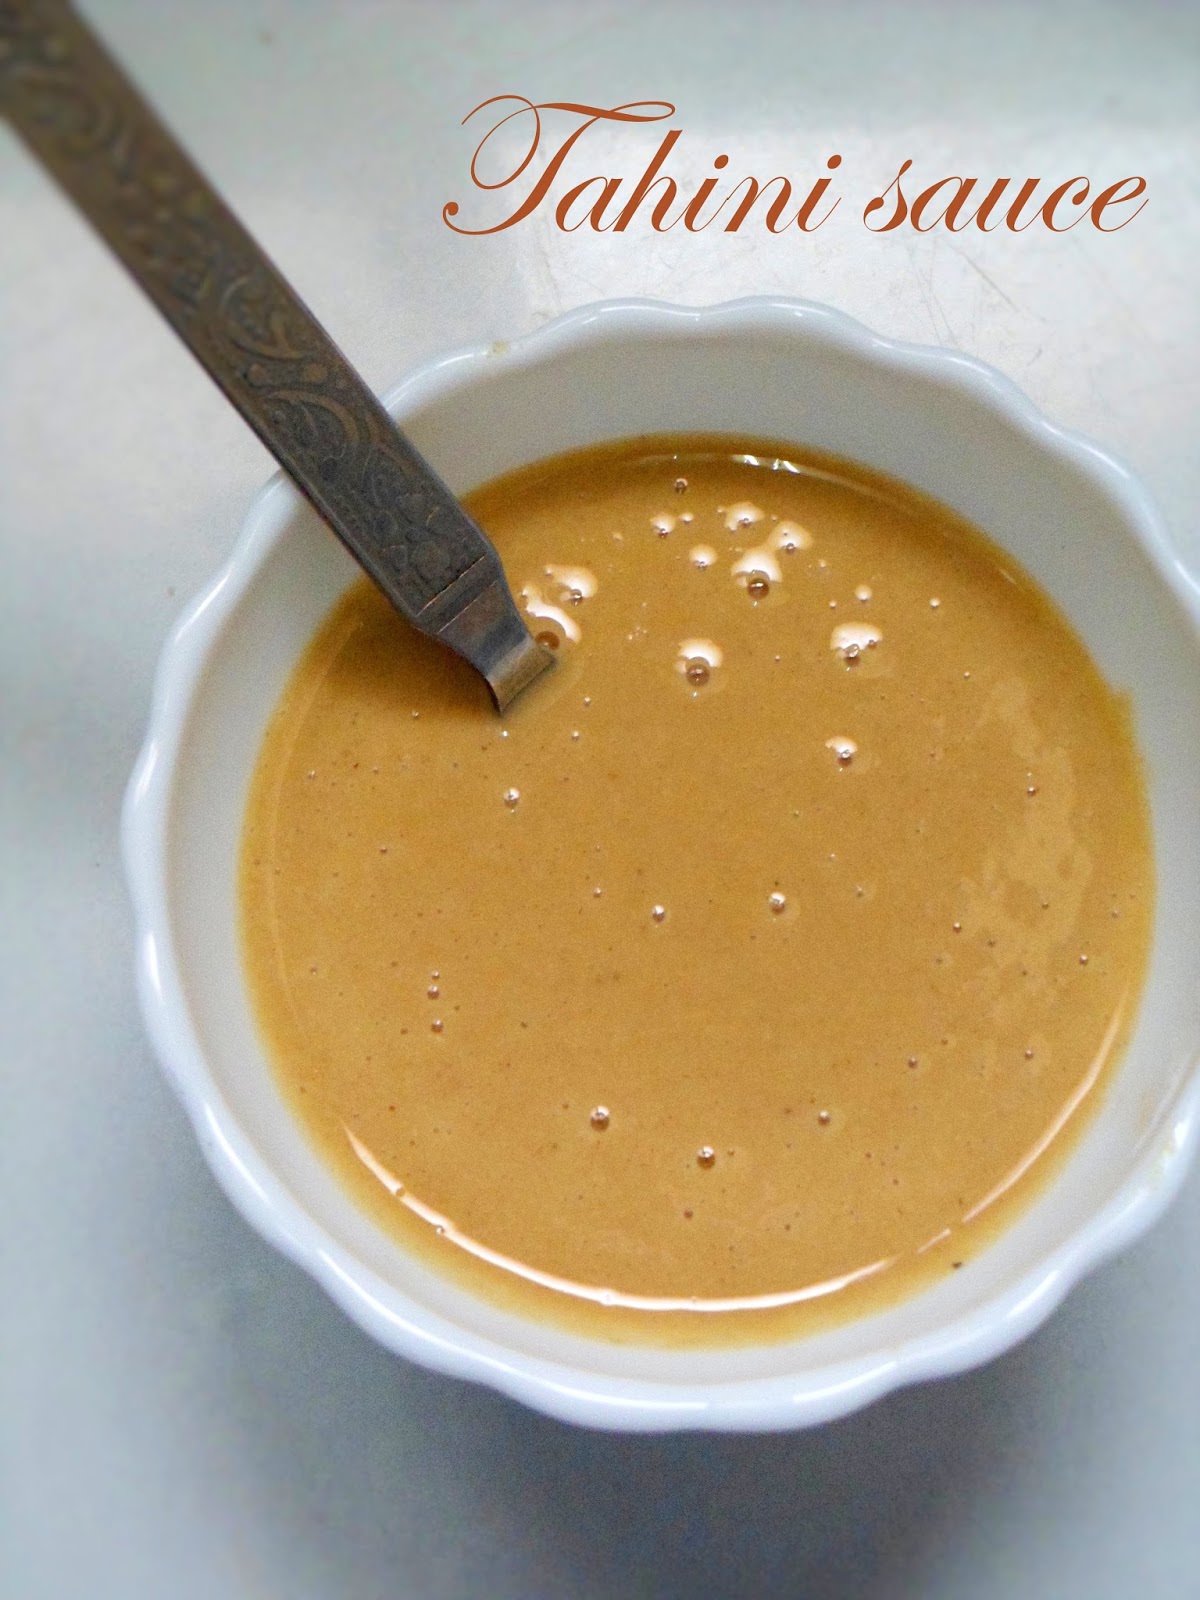 Tahini paste |How to make tahini sauce from scratch |home made tahini ...